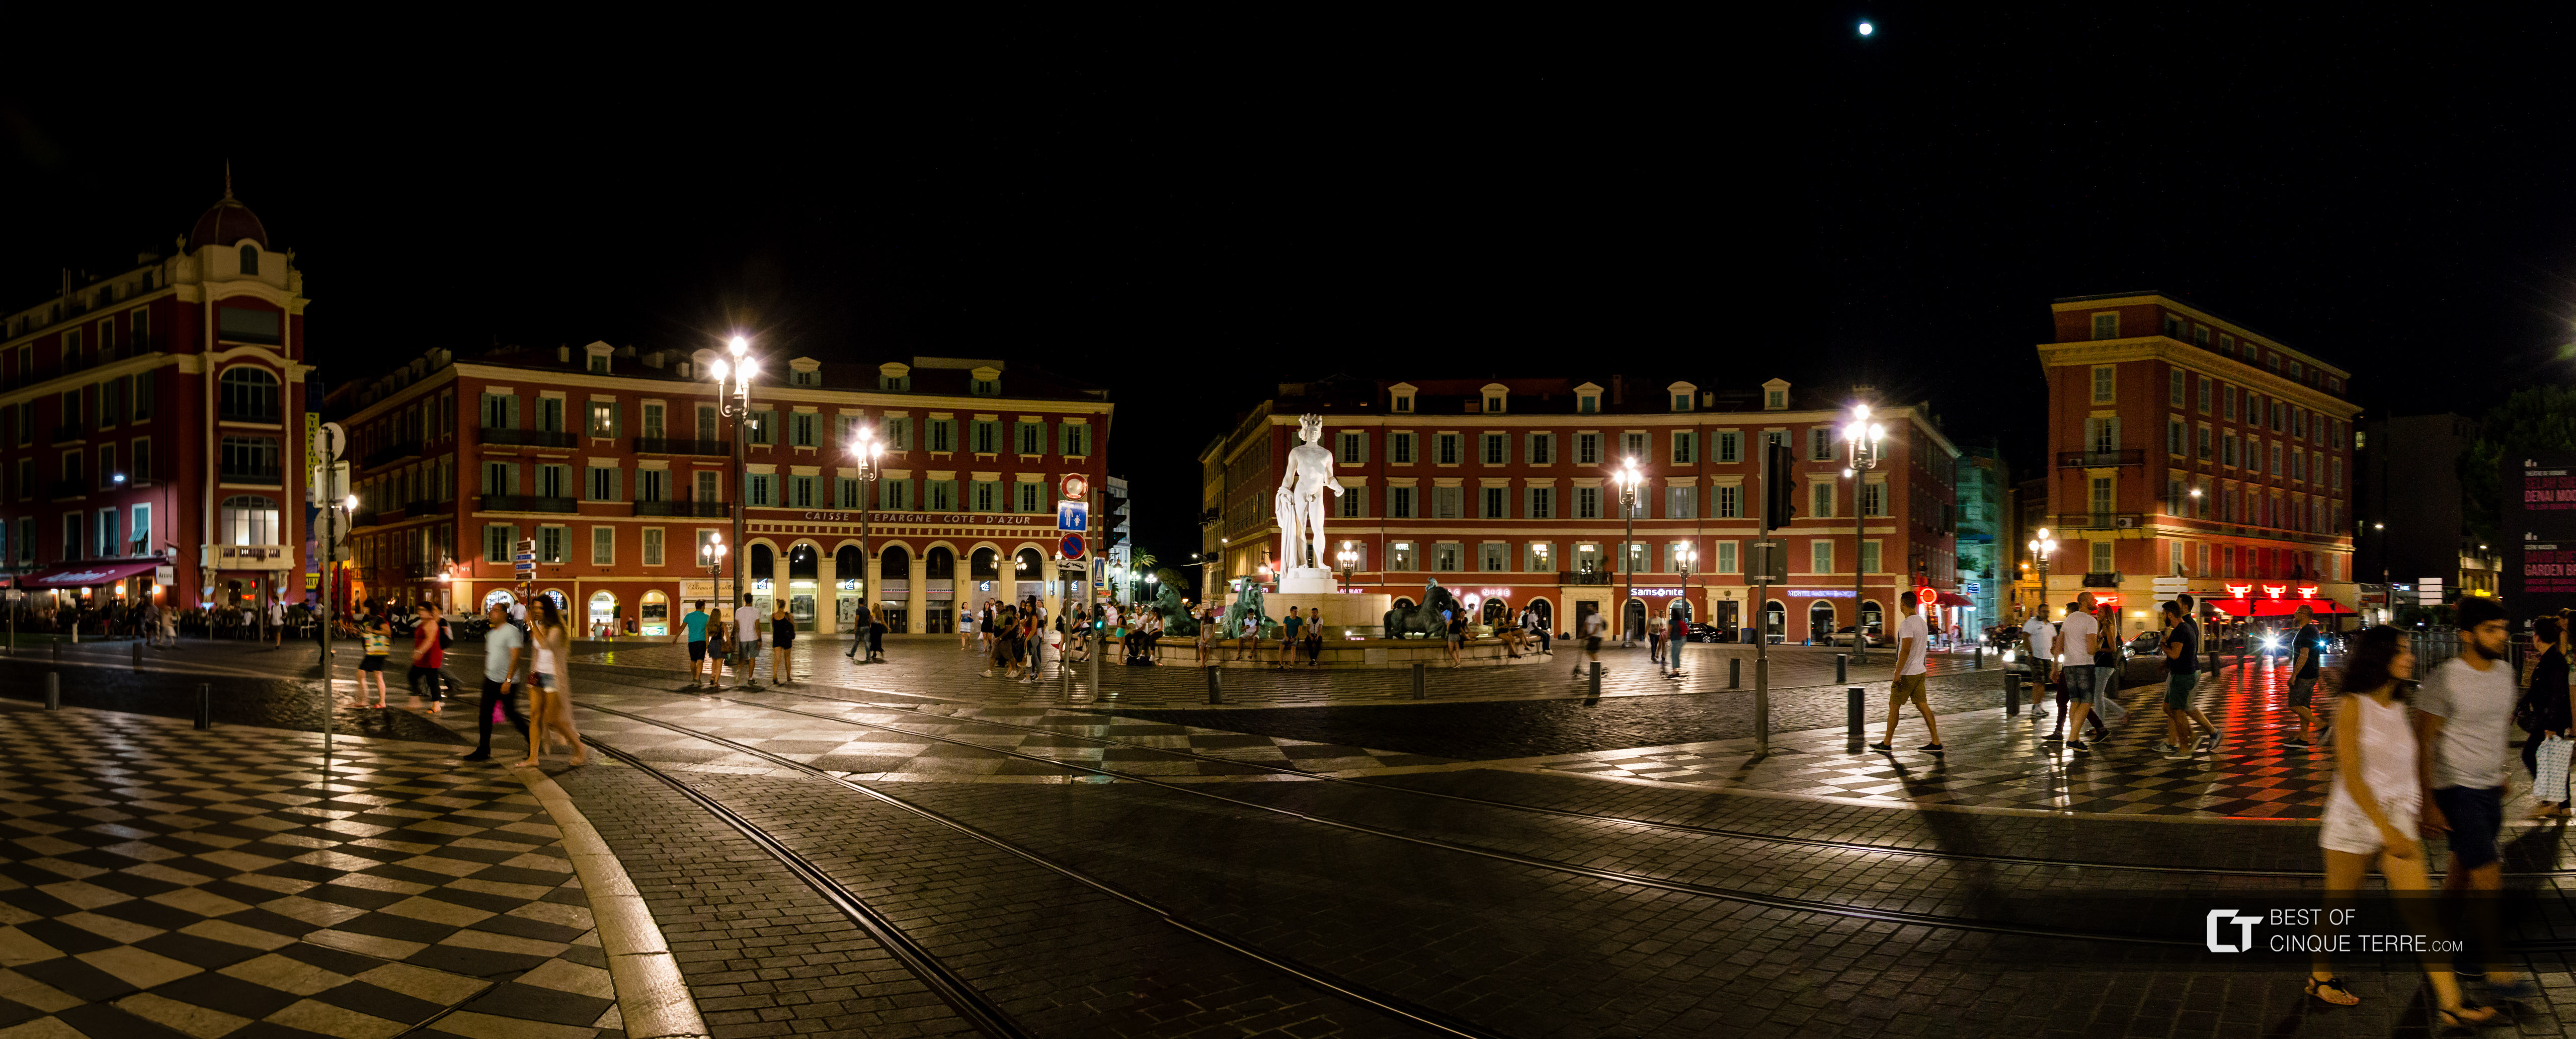 Piazza Massena di notte, Nizza, Francia